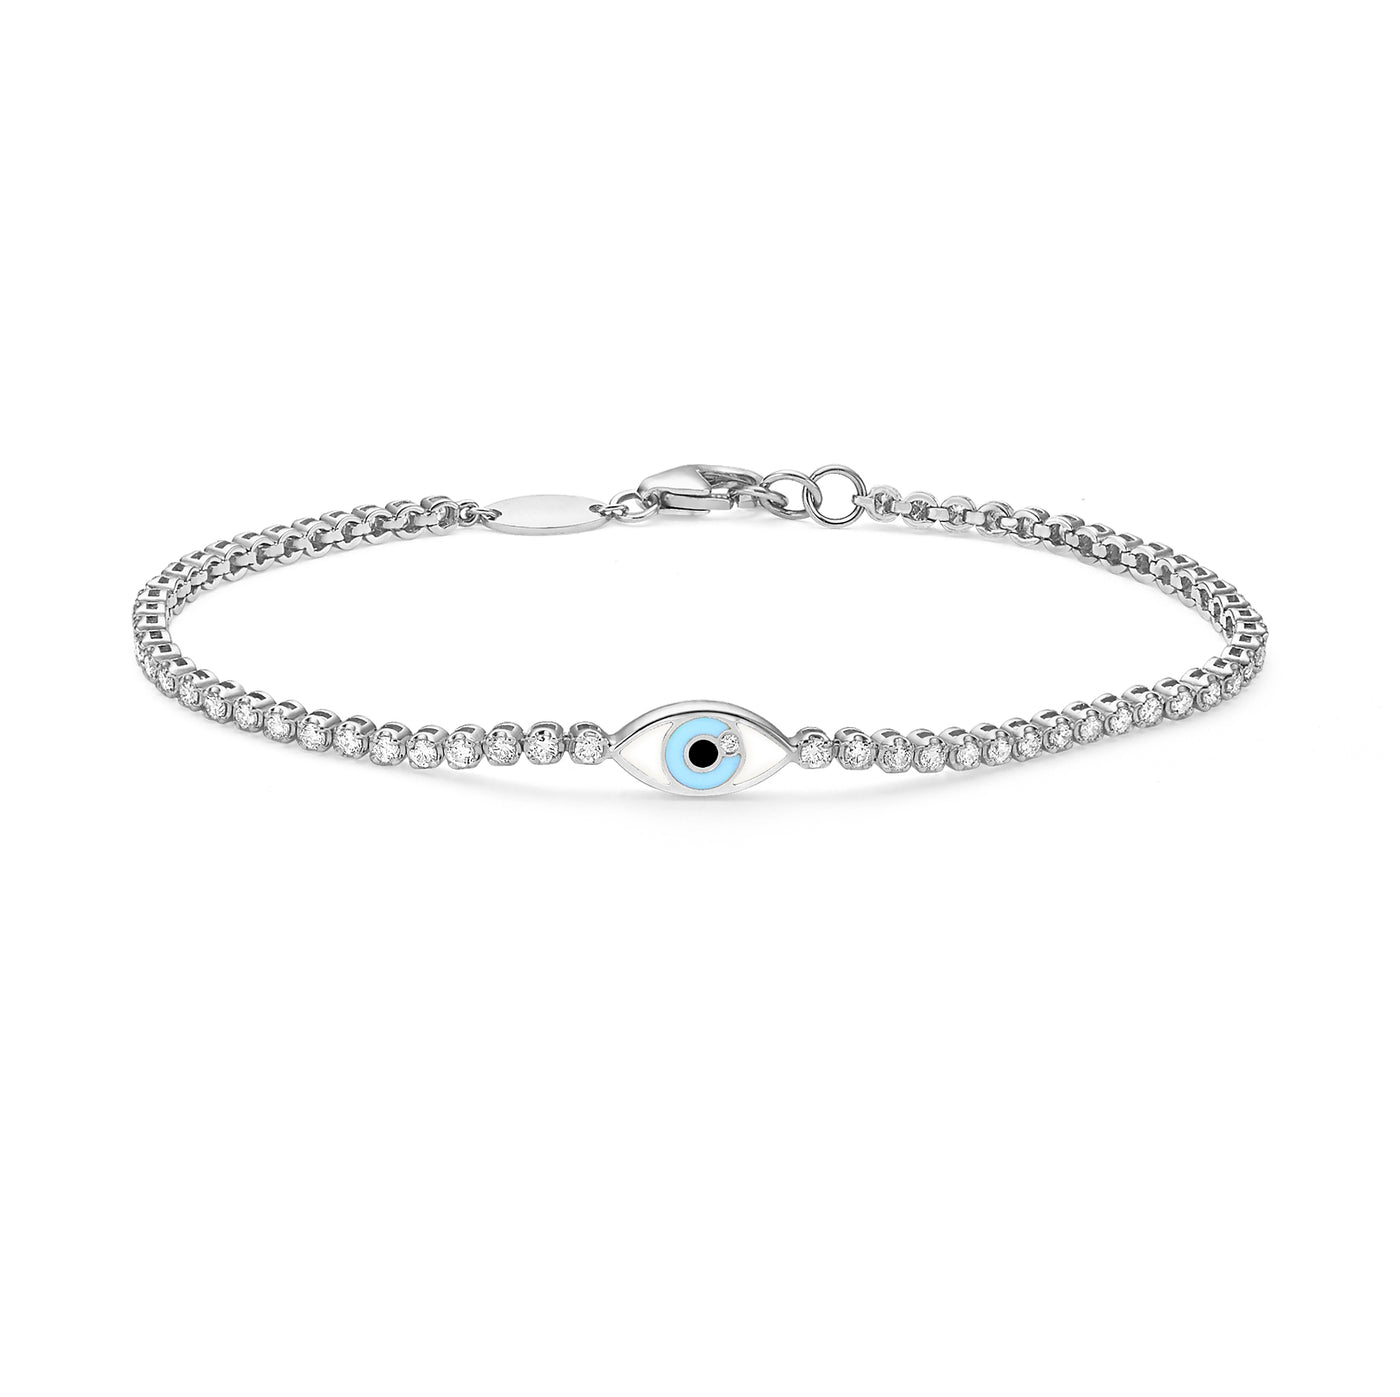 Santorini Eye tennis bracelet